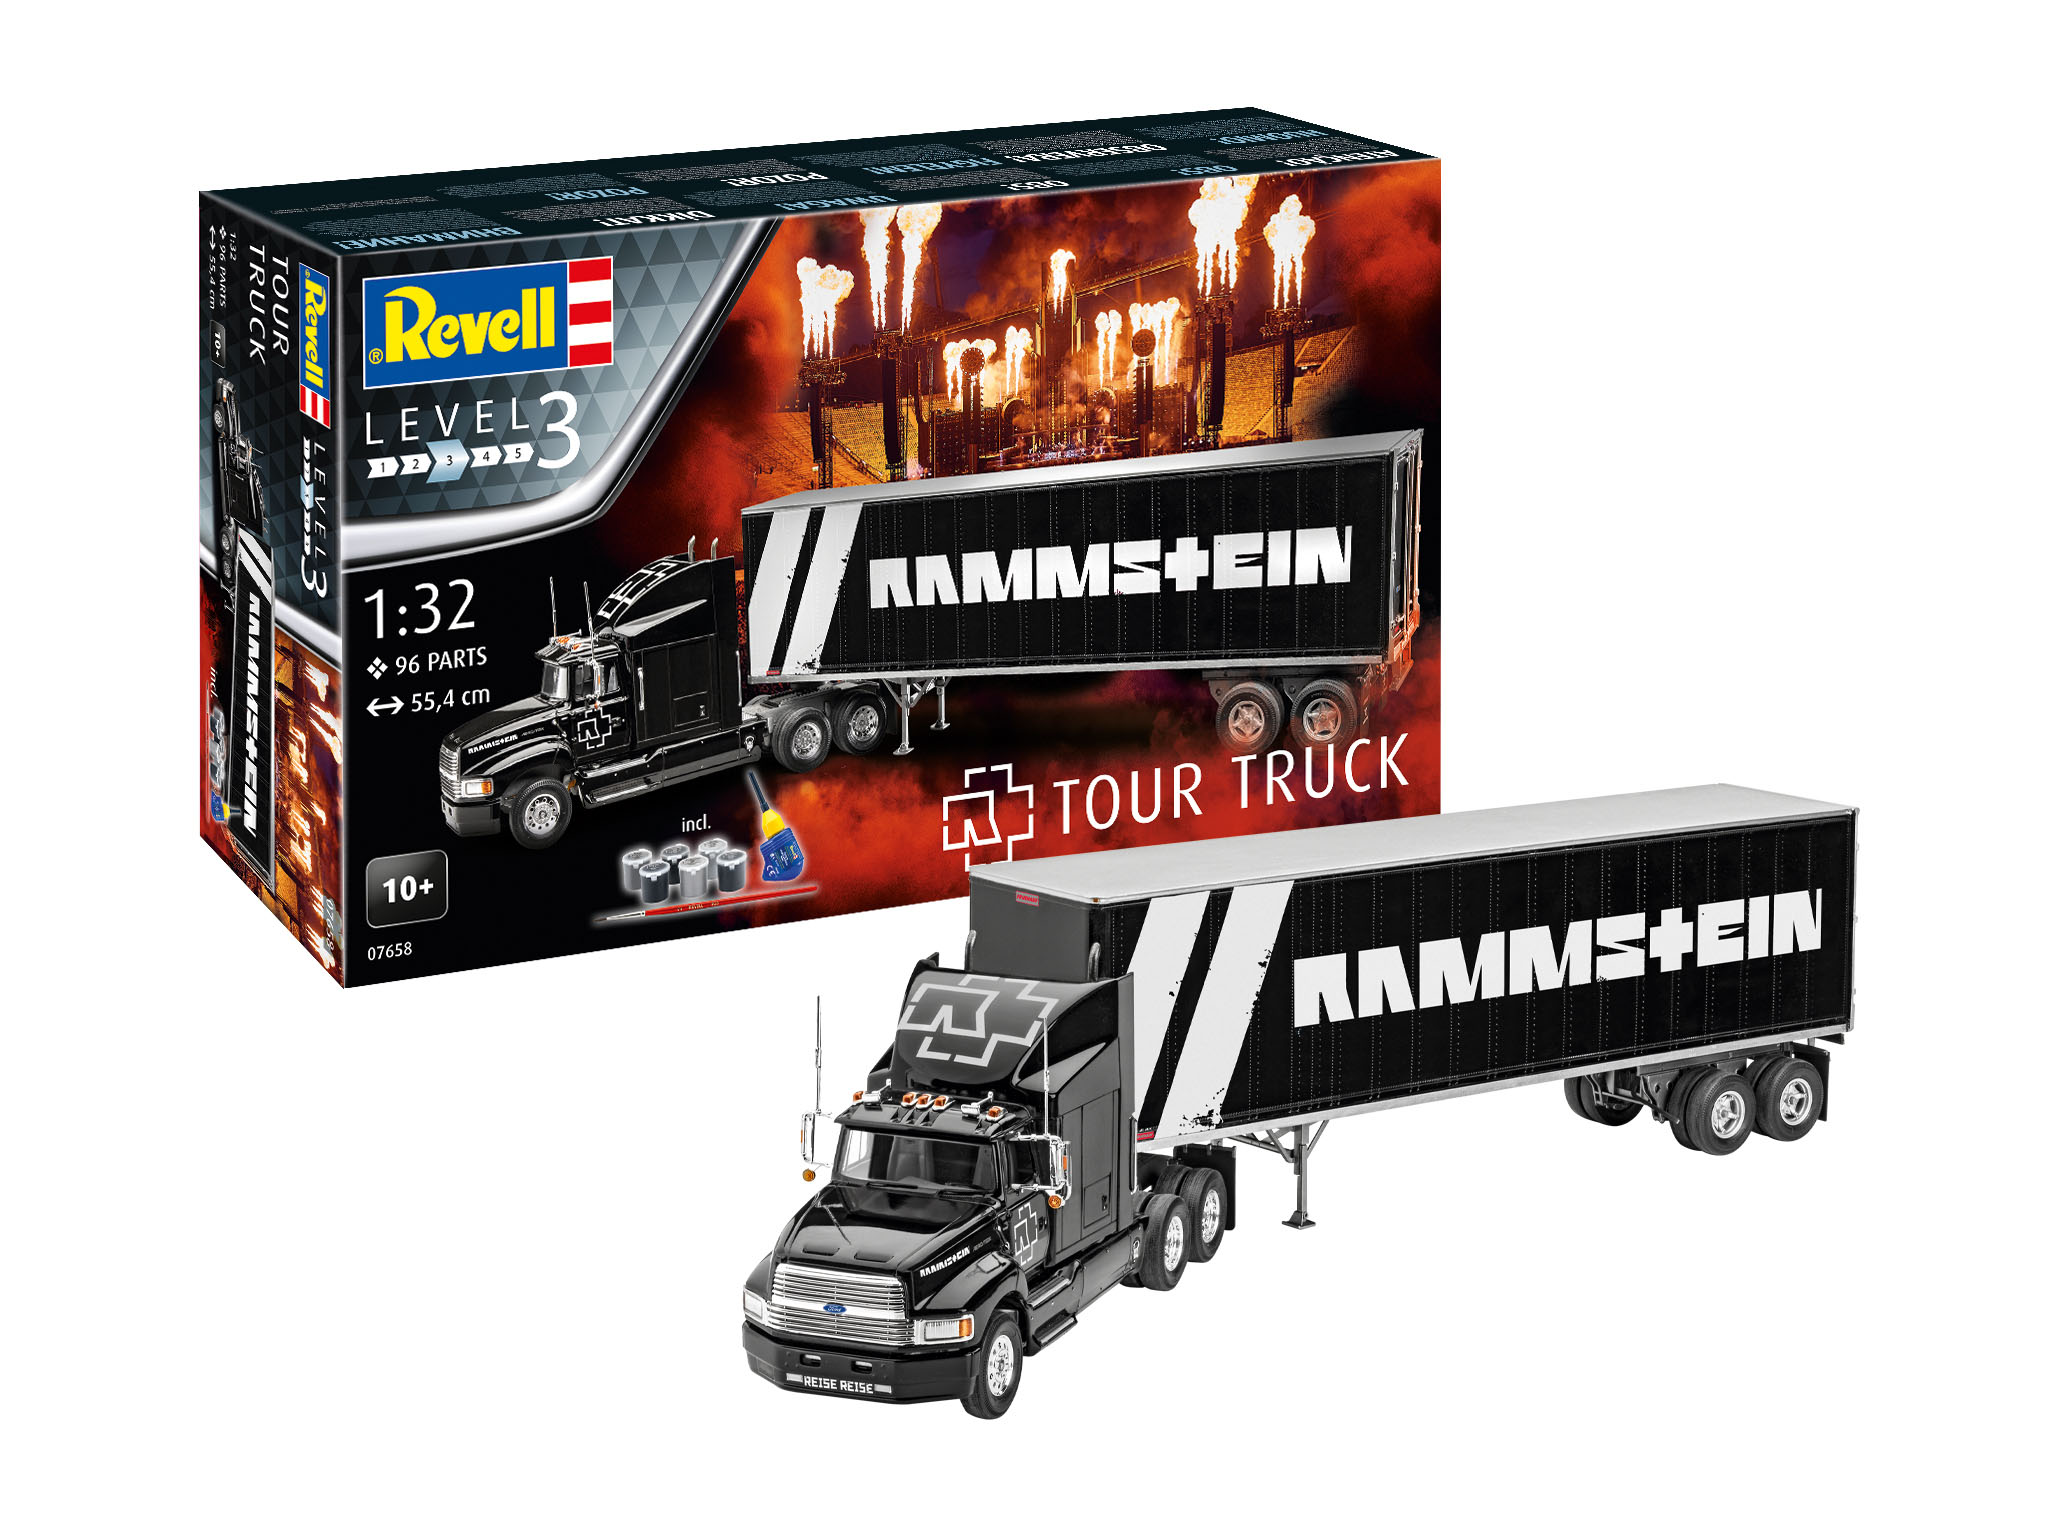 1:32 Geschenkset "Rammstein" Tour Truck